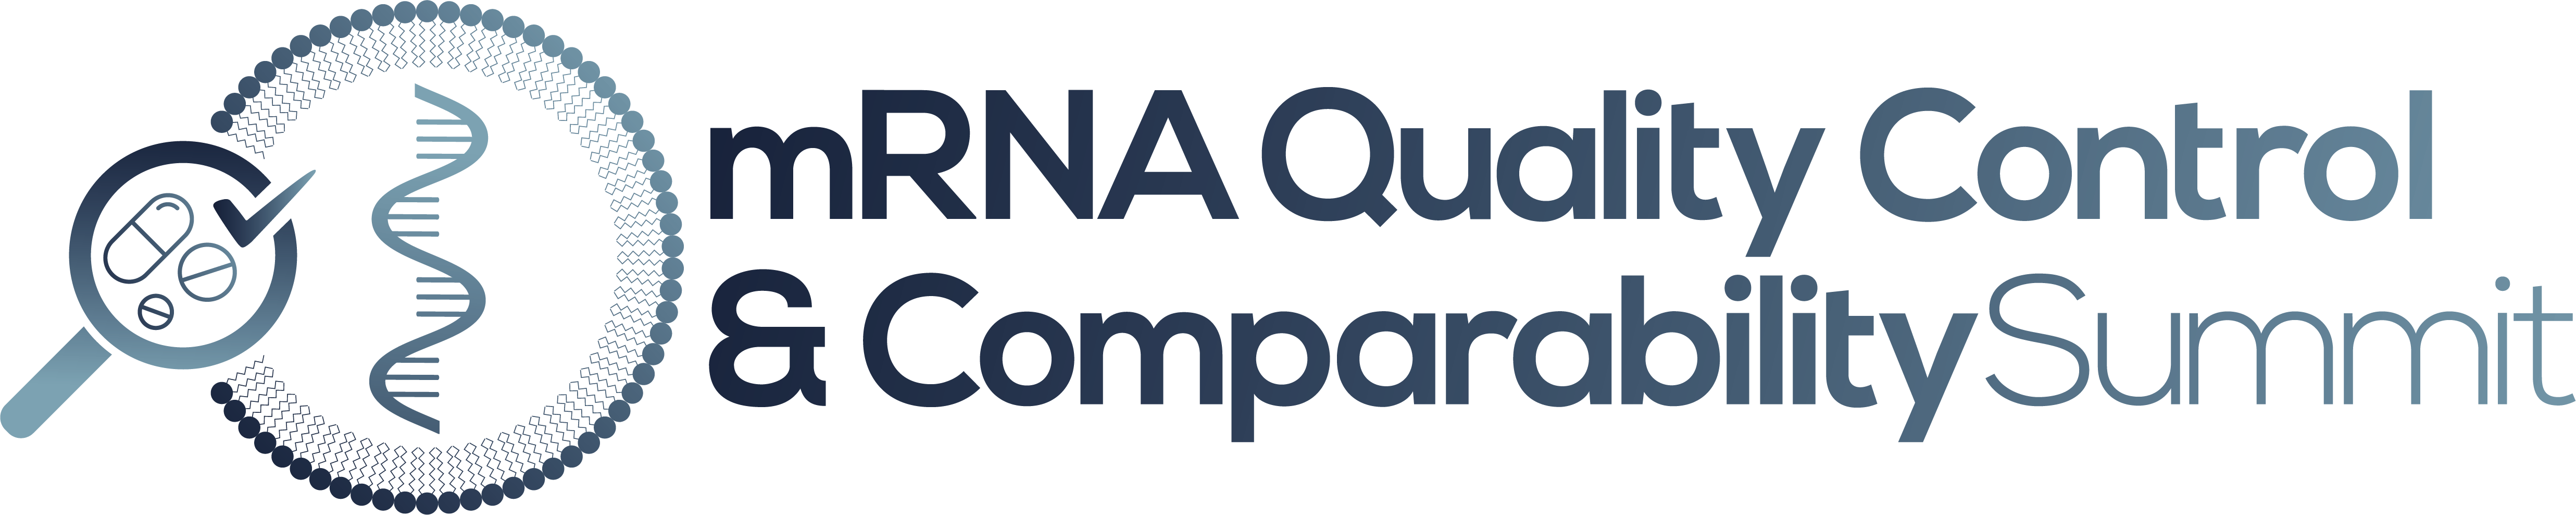 mRNA Quality Control & Comparability Summit Logo